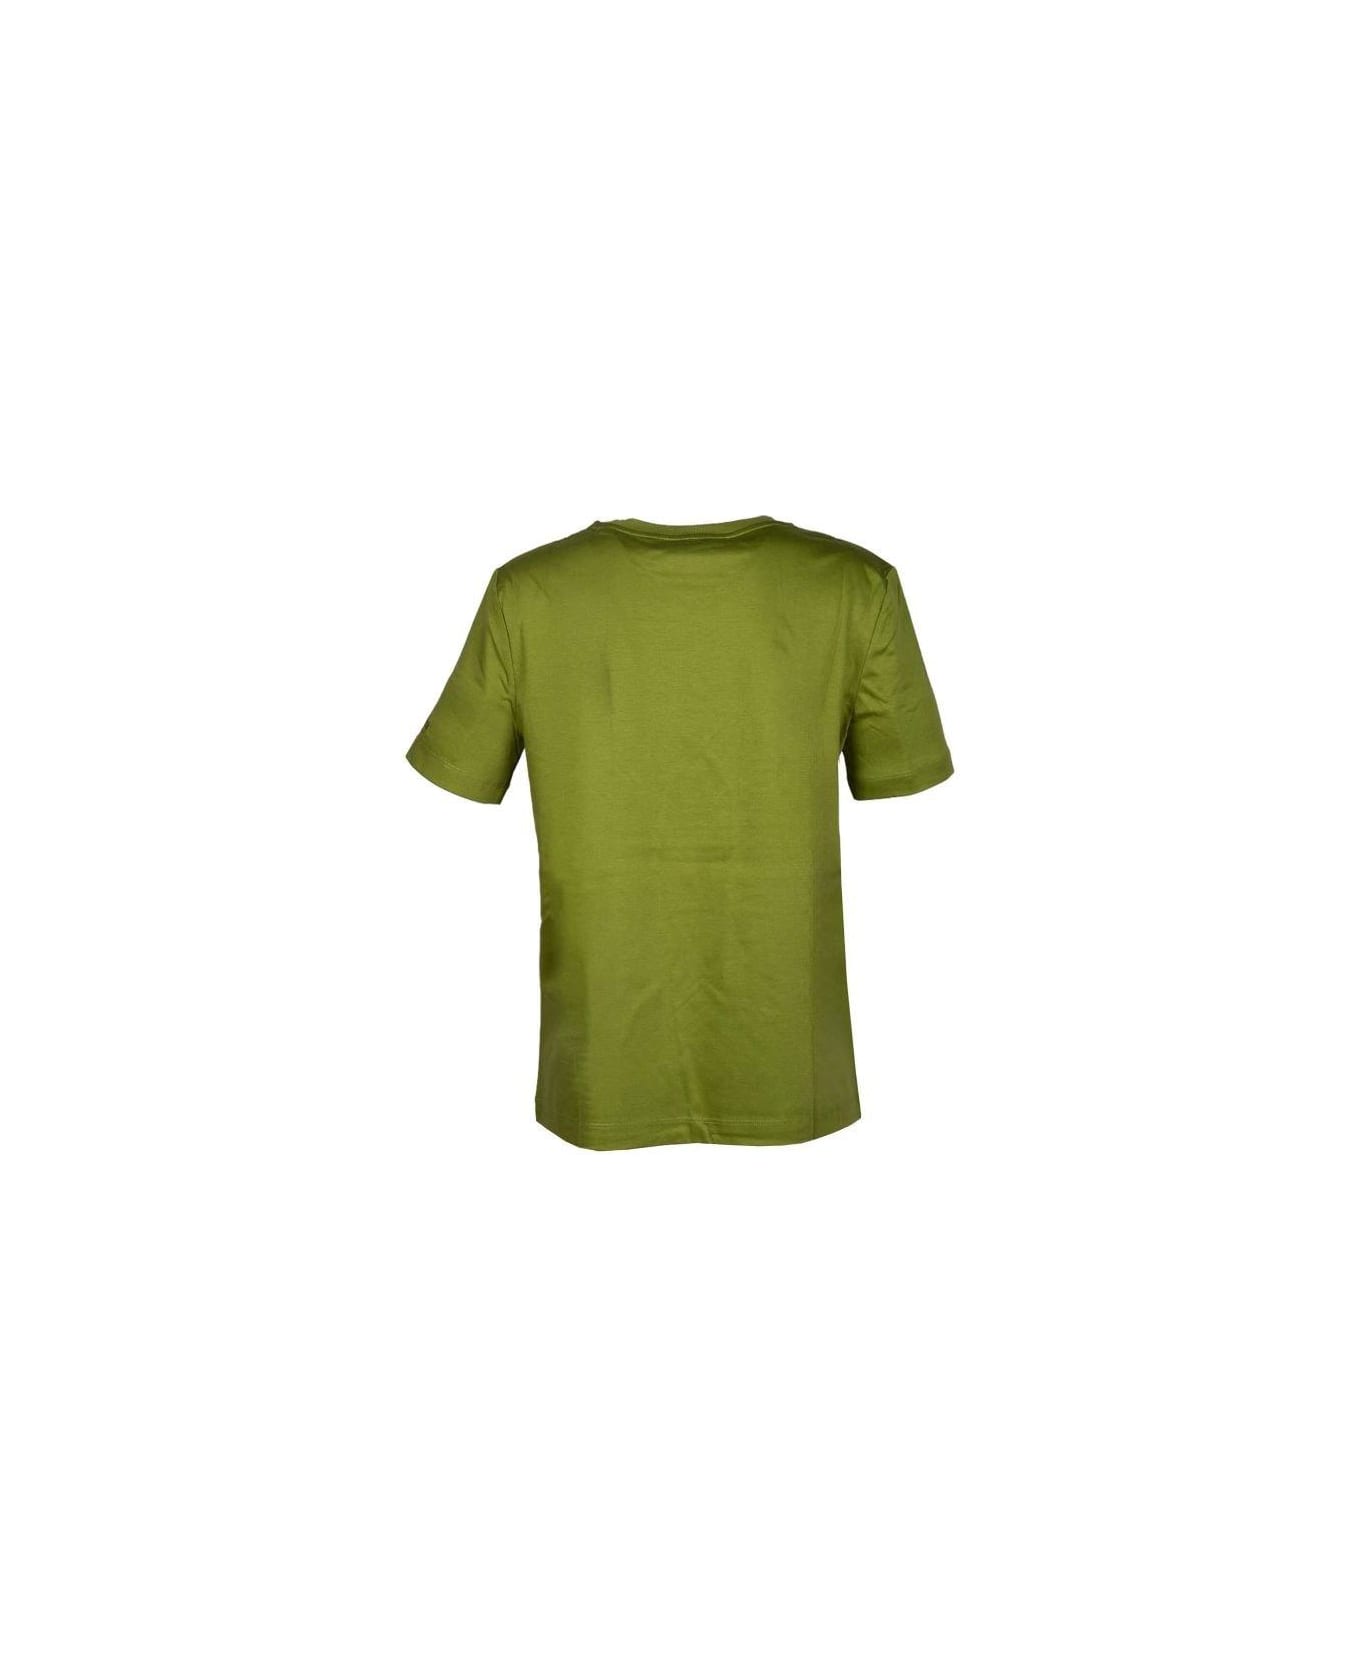 Max Mara Crewneck Short-sleeved T-shirt - Acid green Tシャツ